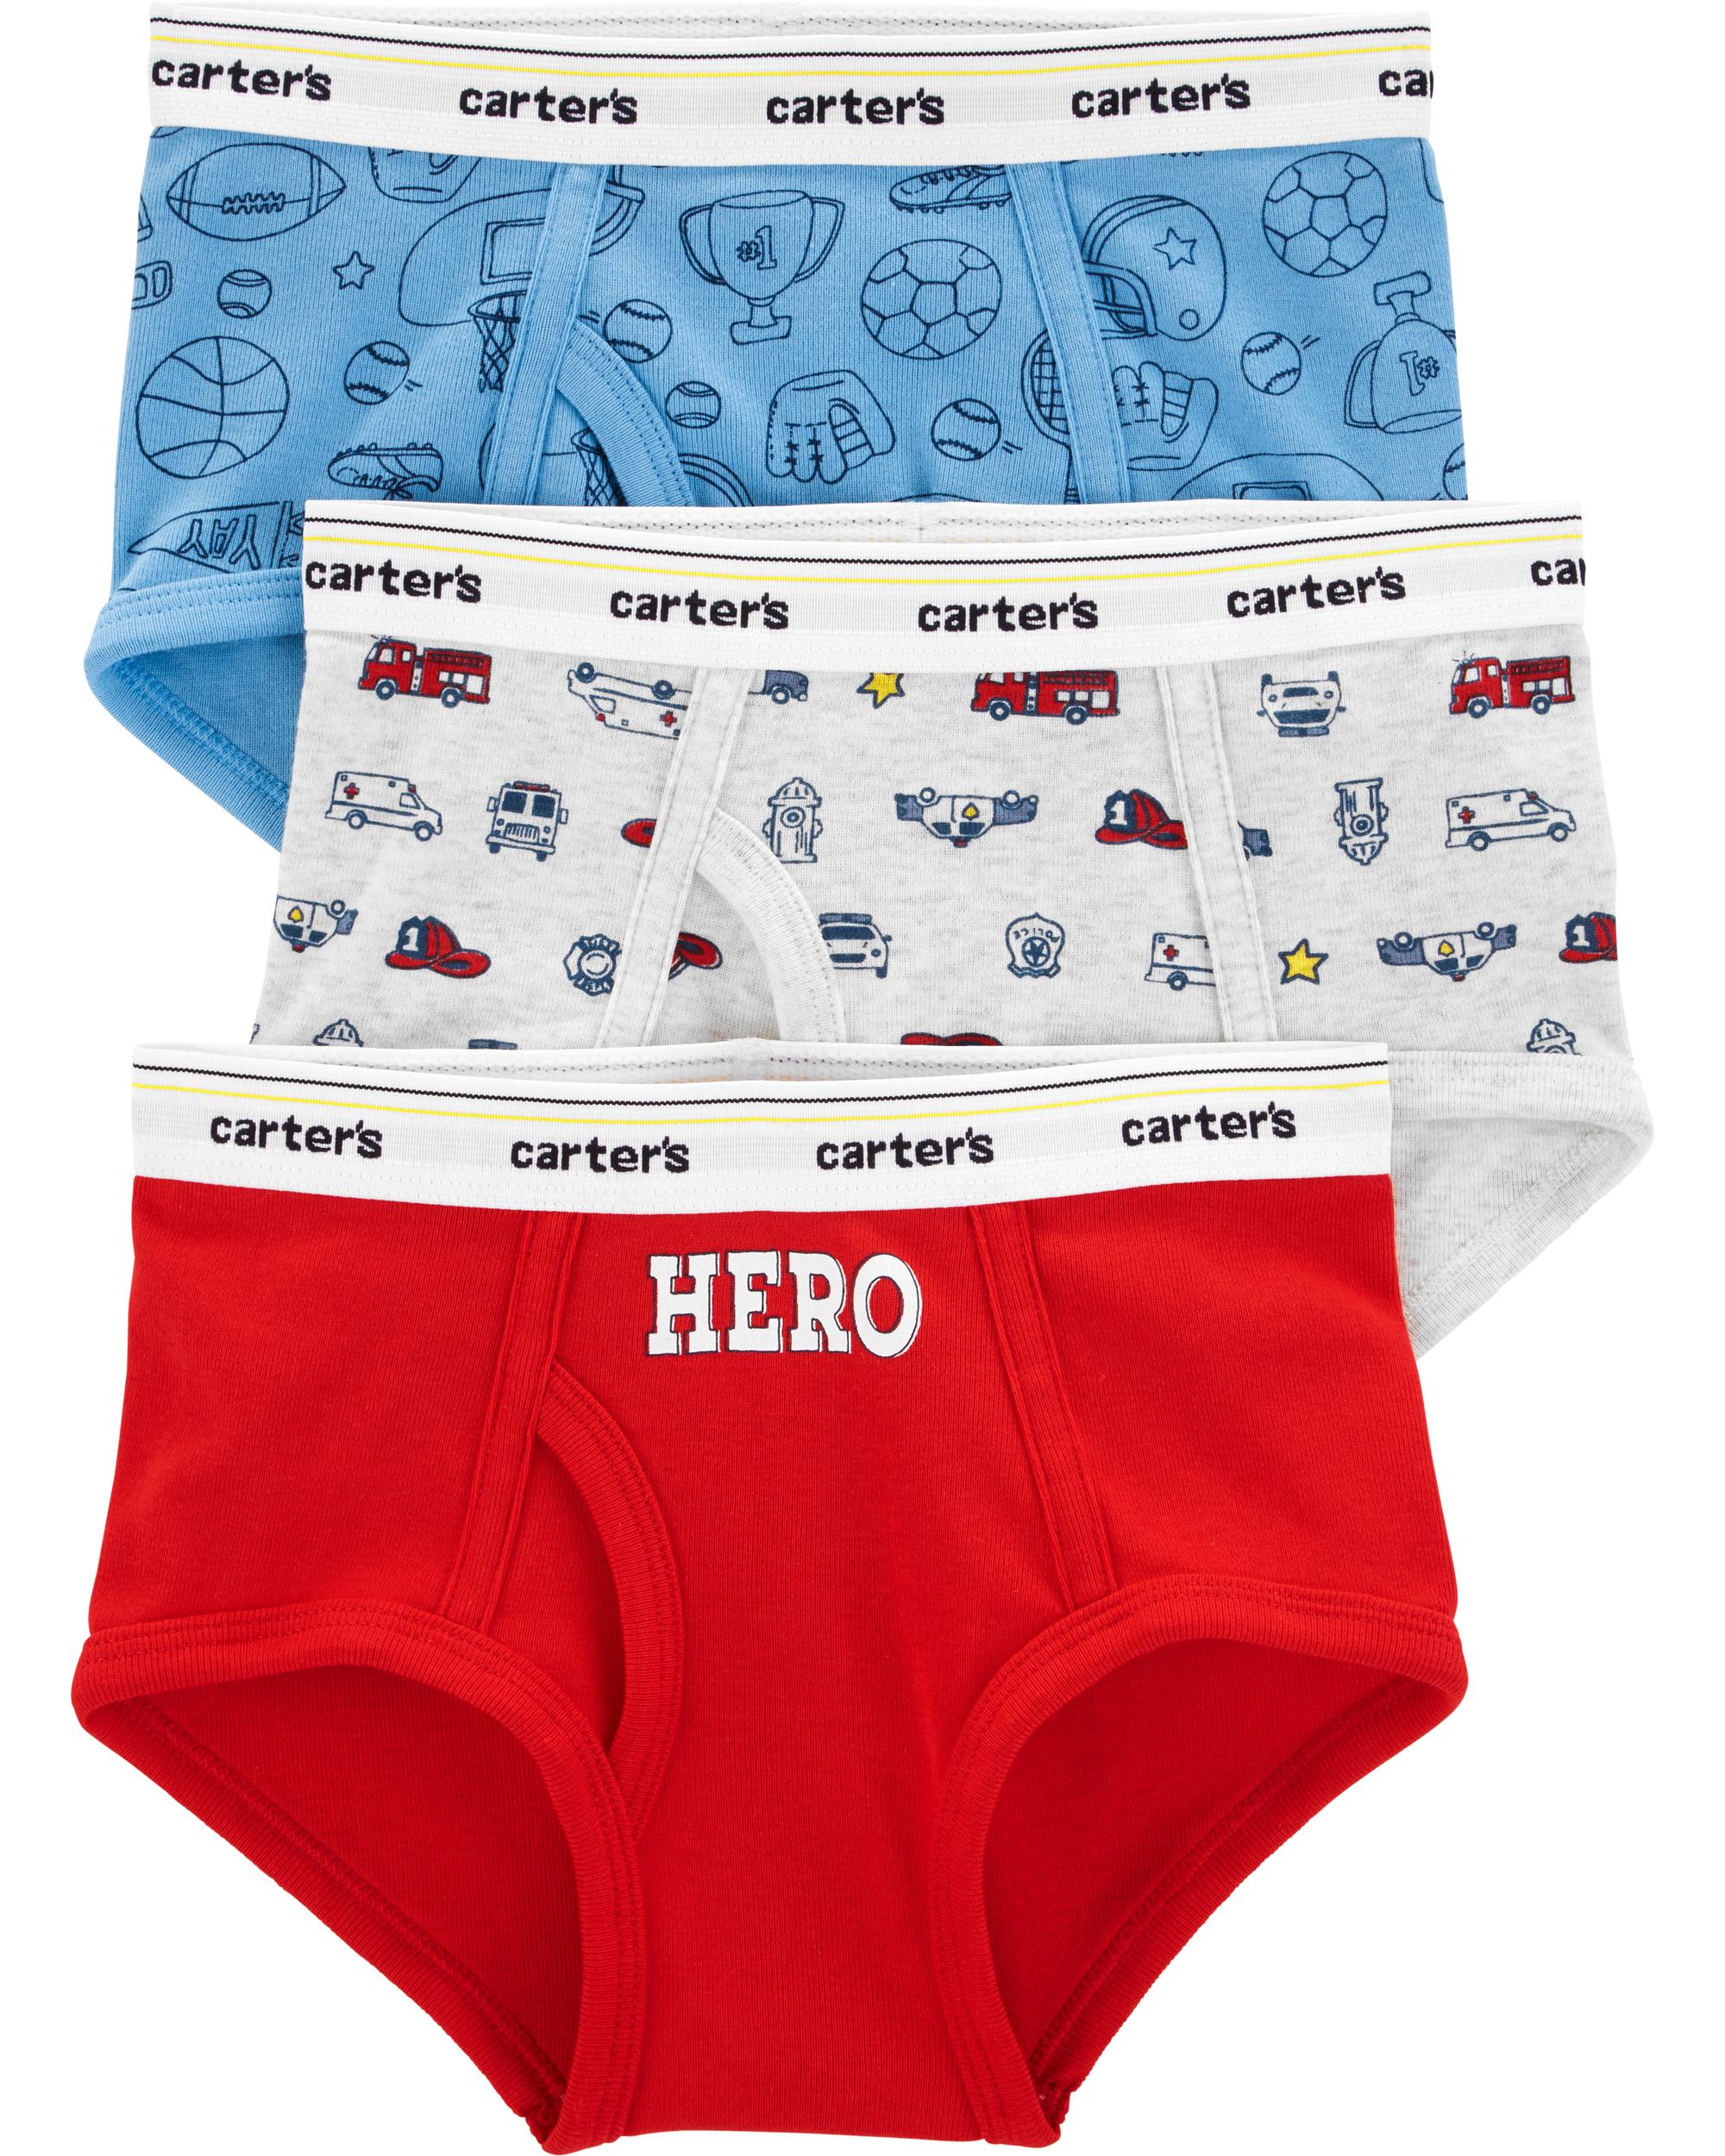 Godderr Toddler Little Boys Underwear 2-14Y Teen Boys Soft Cotton Boxer  Briefs Cute Undies Pack of 4